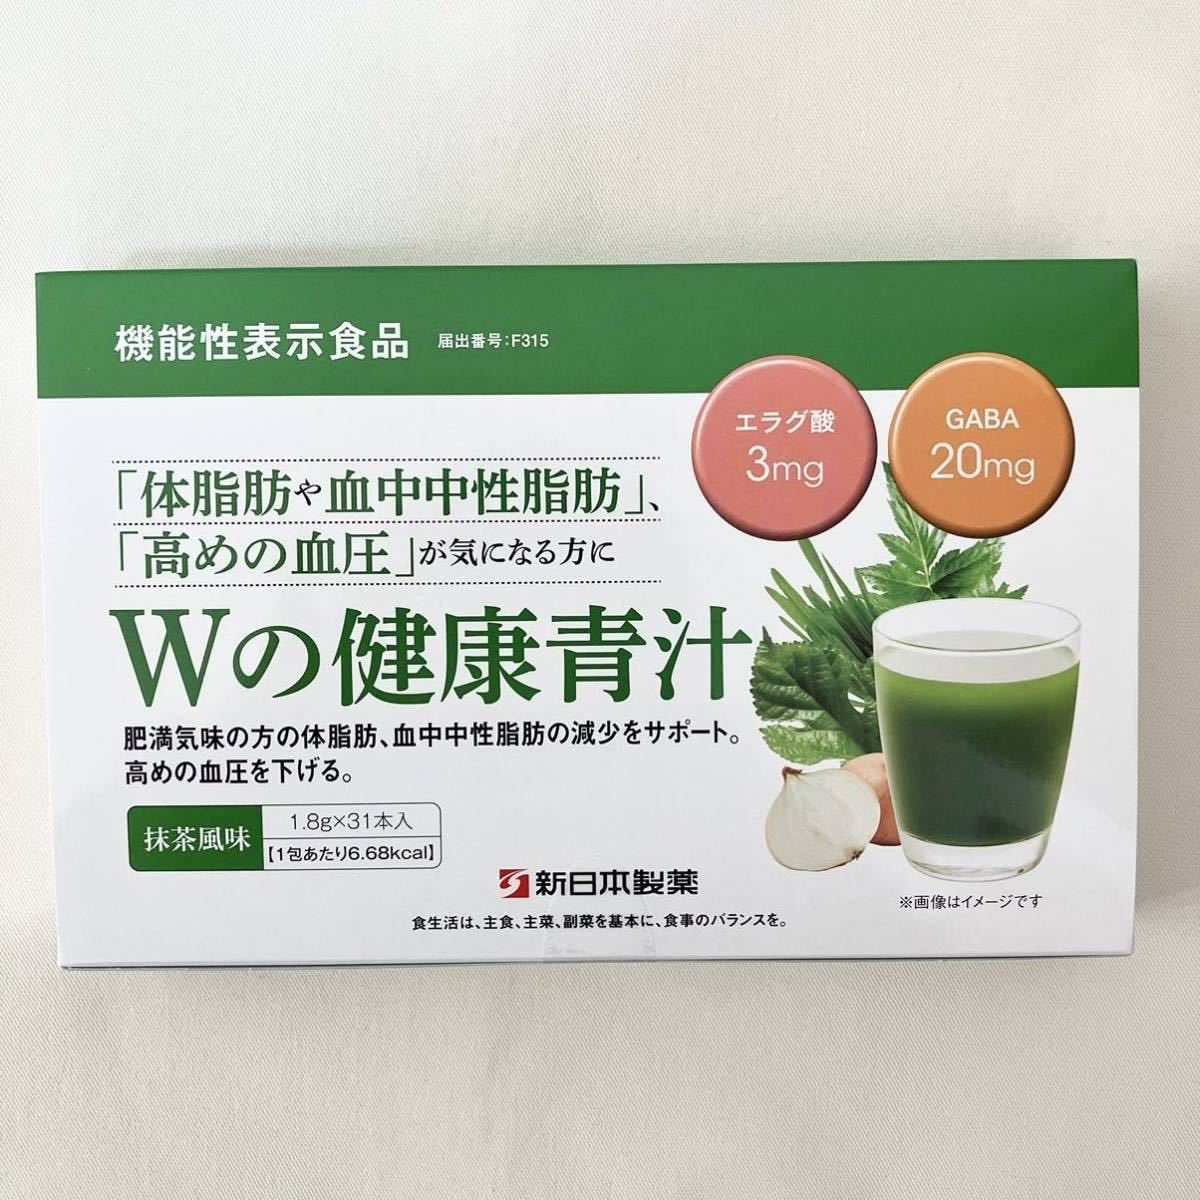 並行輸入品] 新品✨新日本製薬 生活習慣サポート Wの健康青汁 1箱